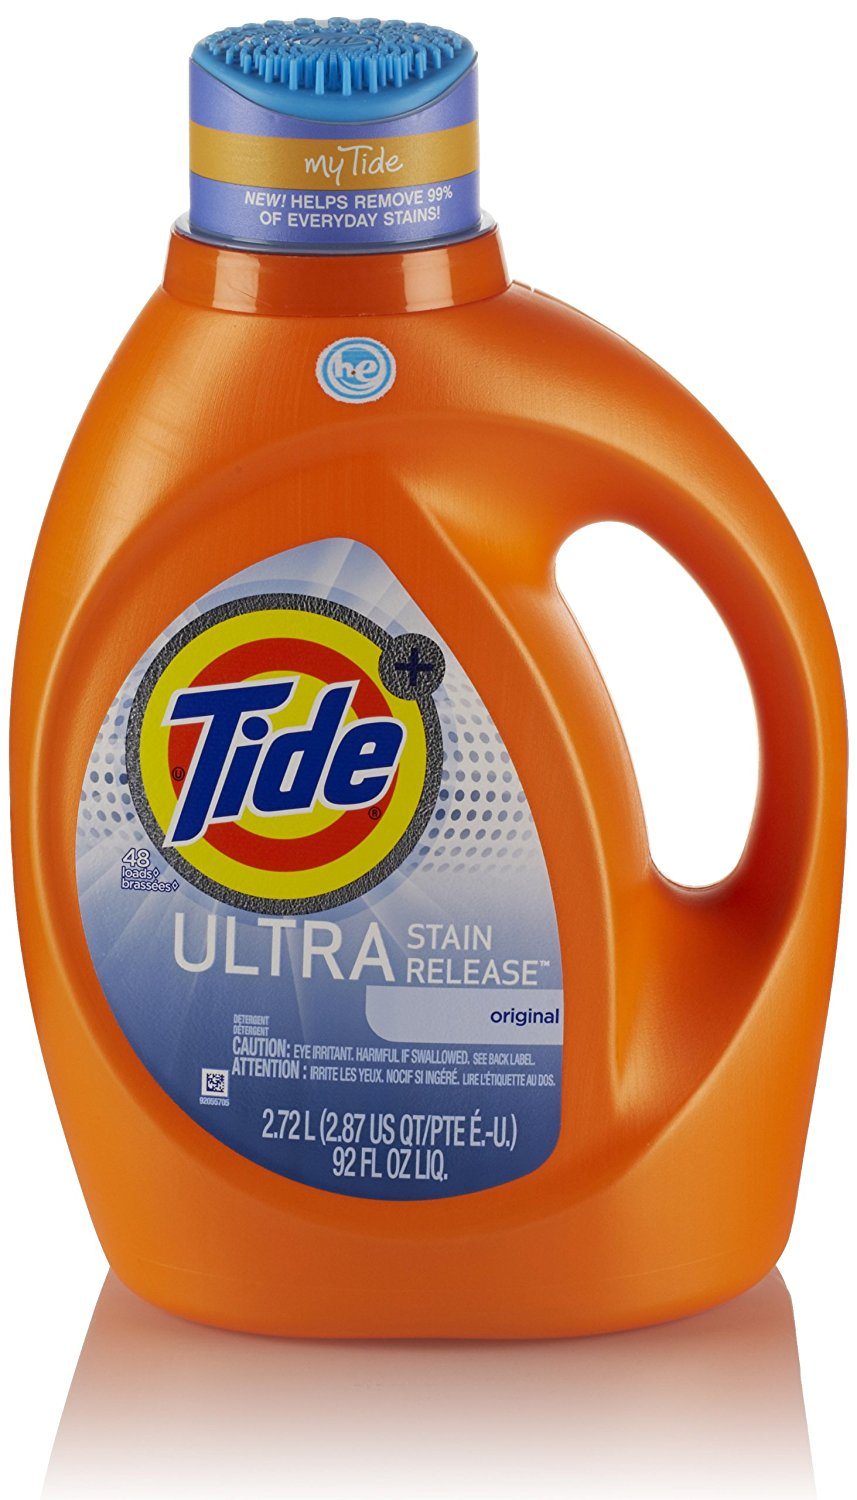 Tide Ultra stain release